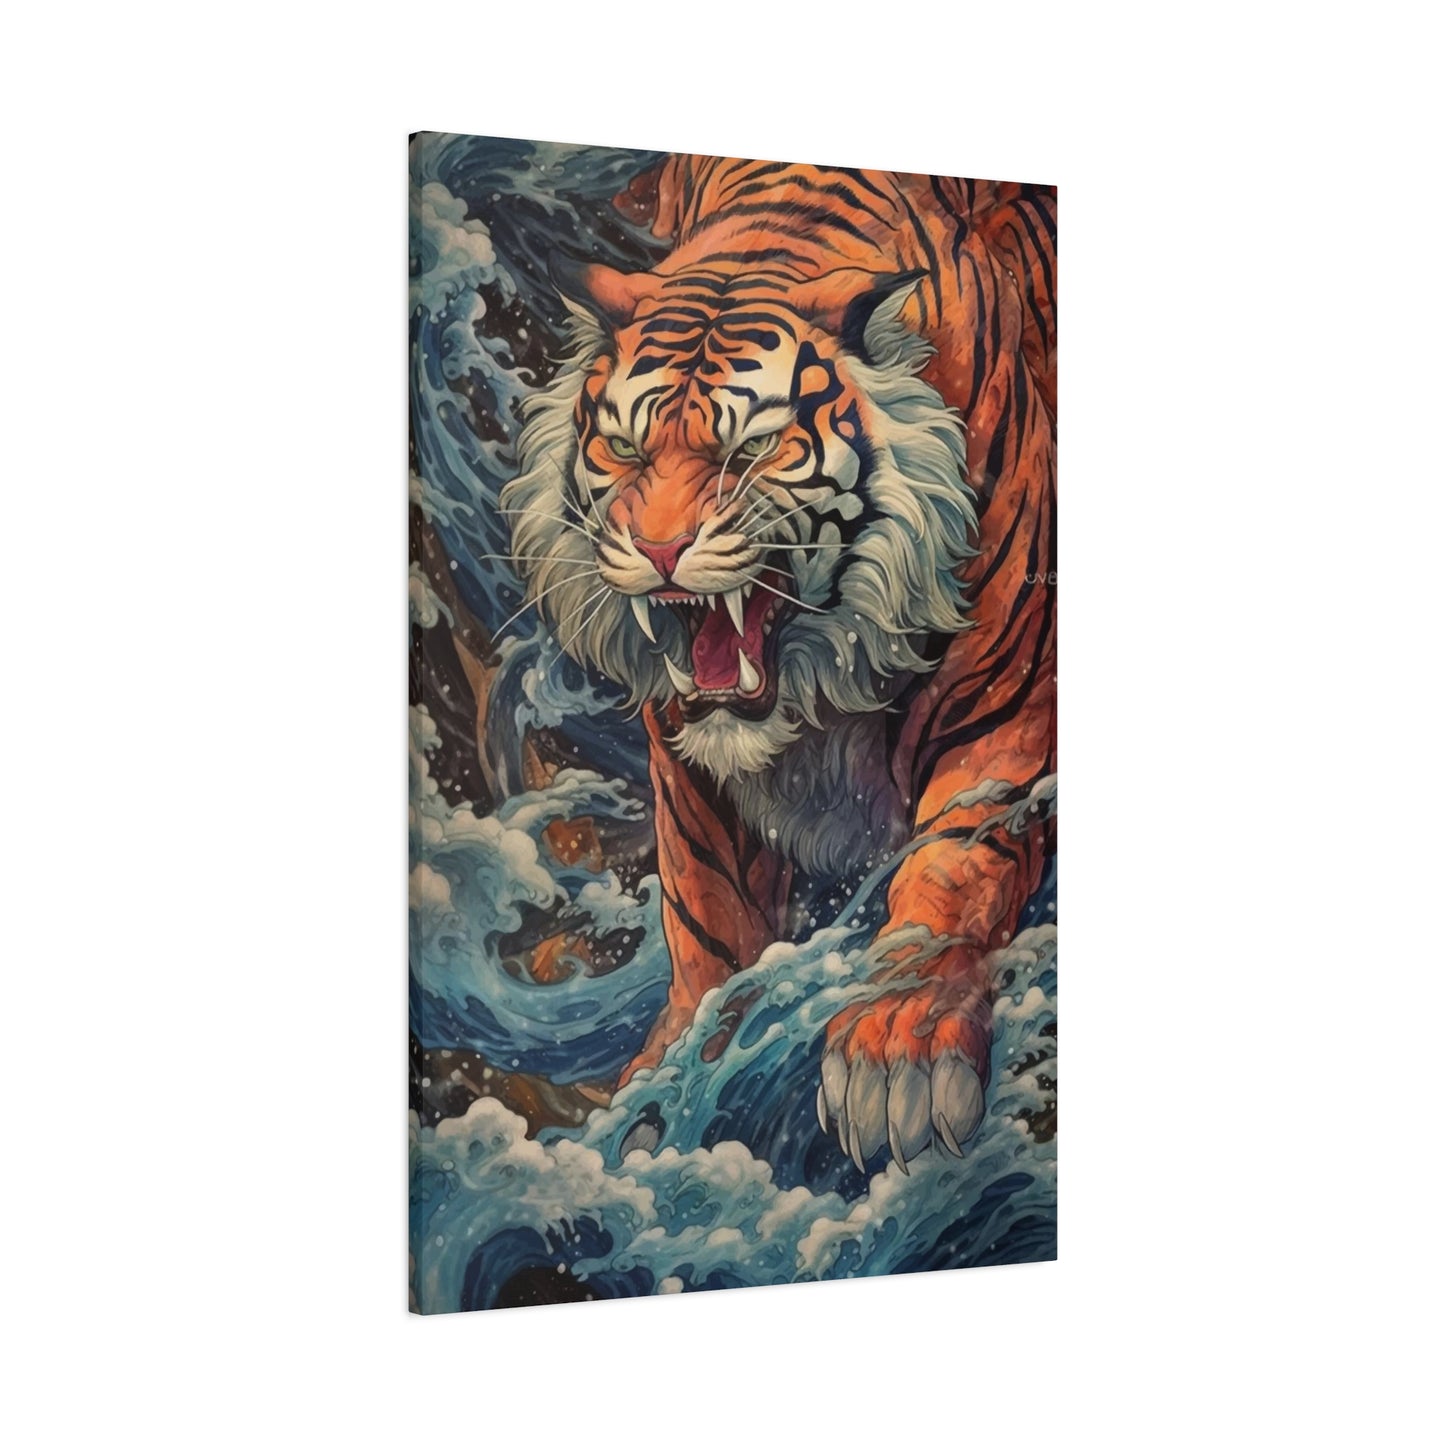 Roaring Tiger Wall Art & Canvas Prints